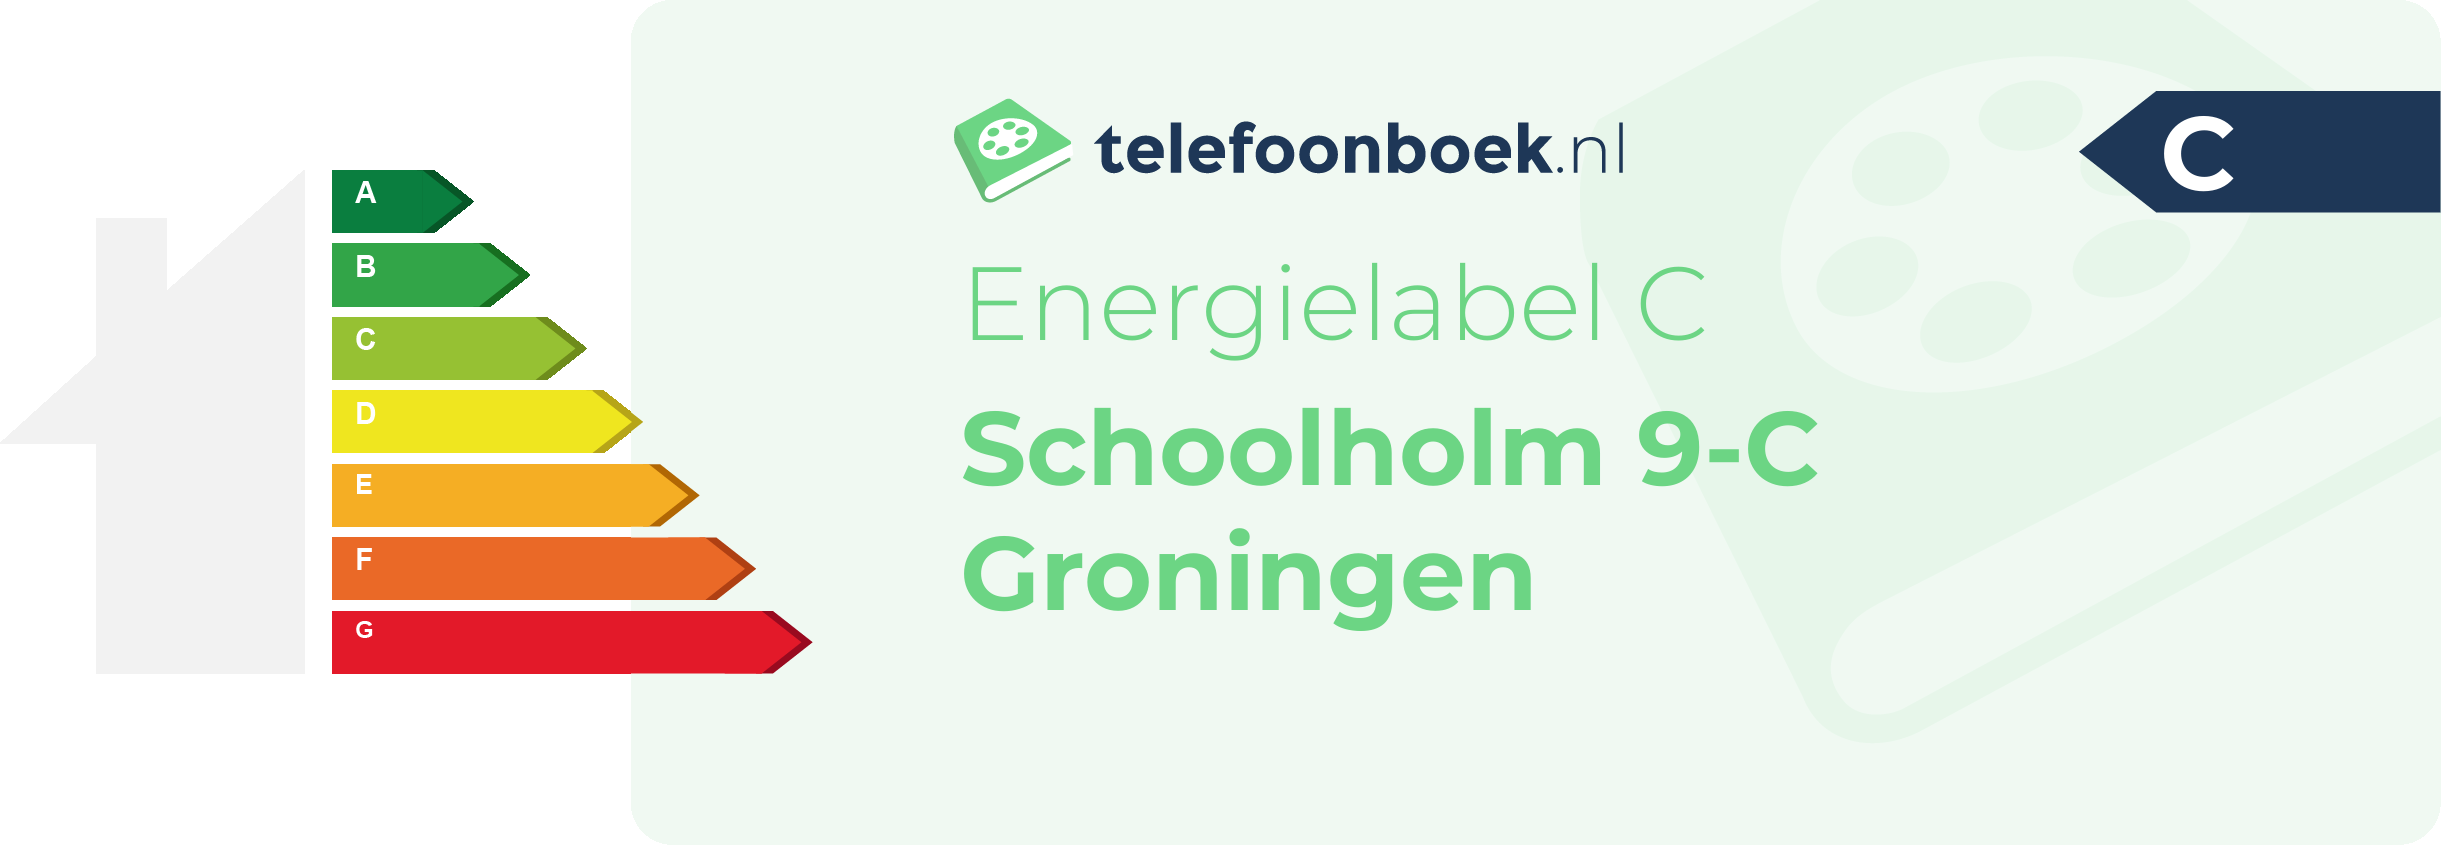 Energielabel Schoolholm 9-C Groningen